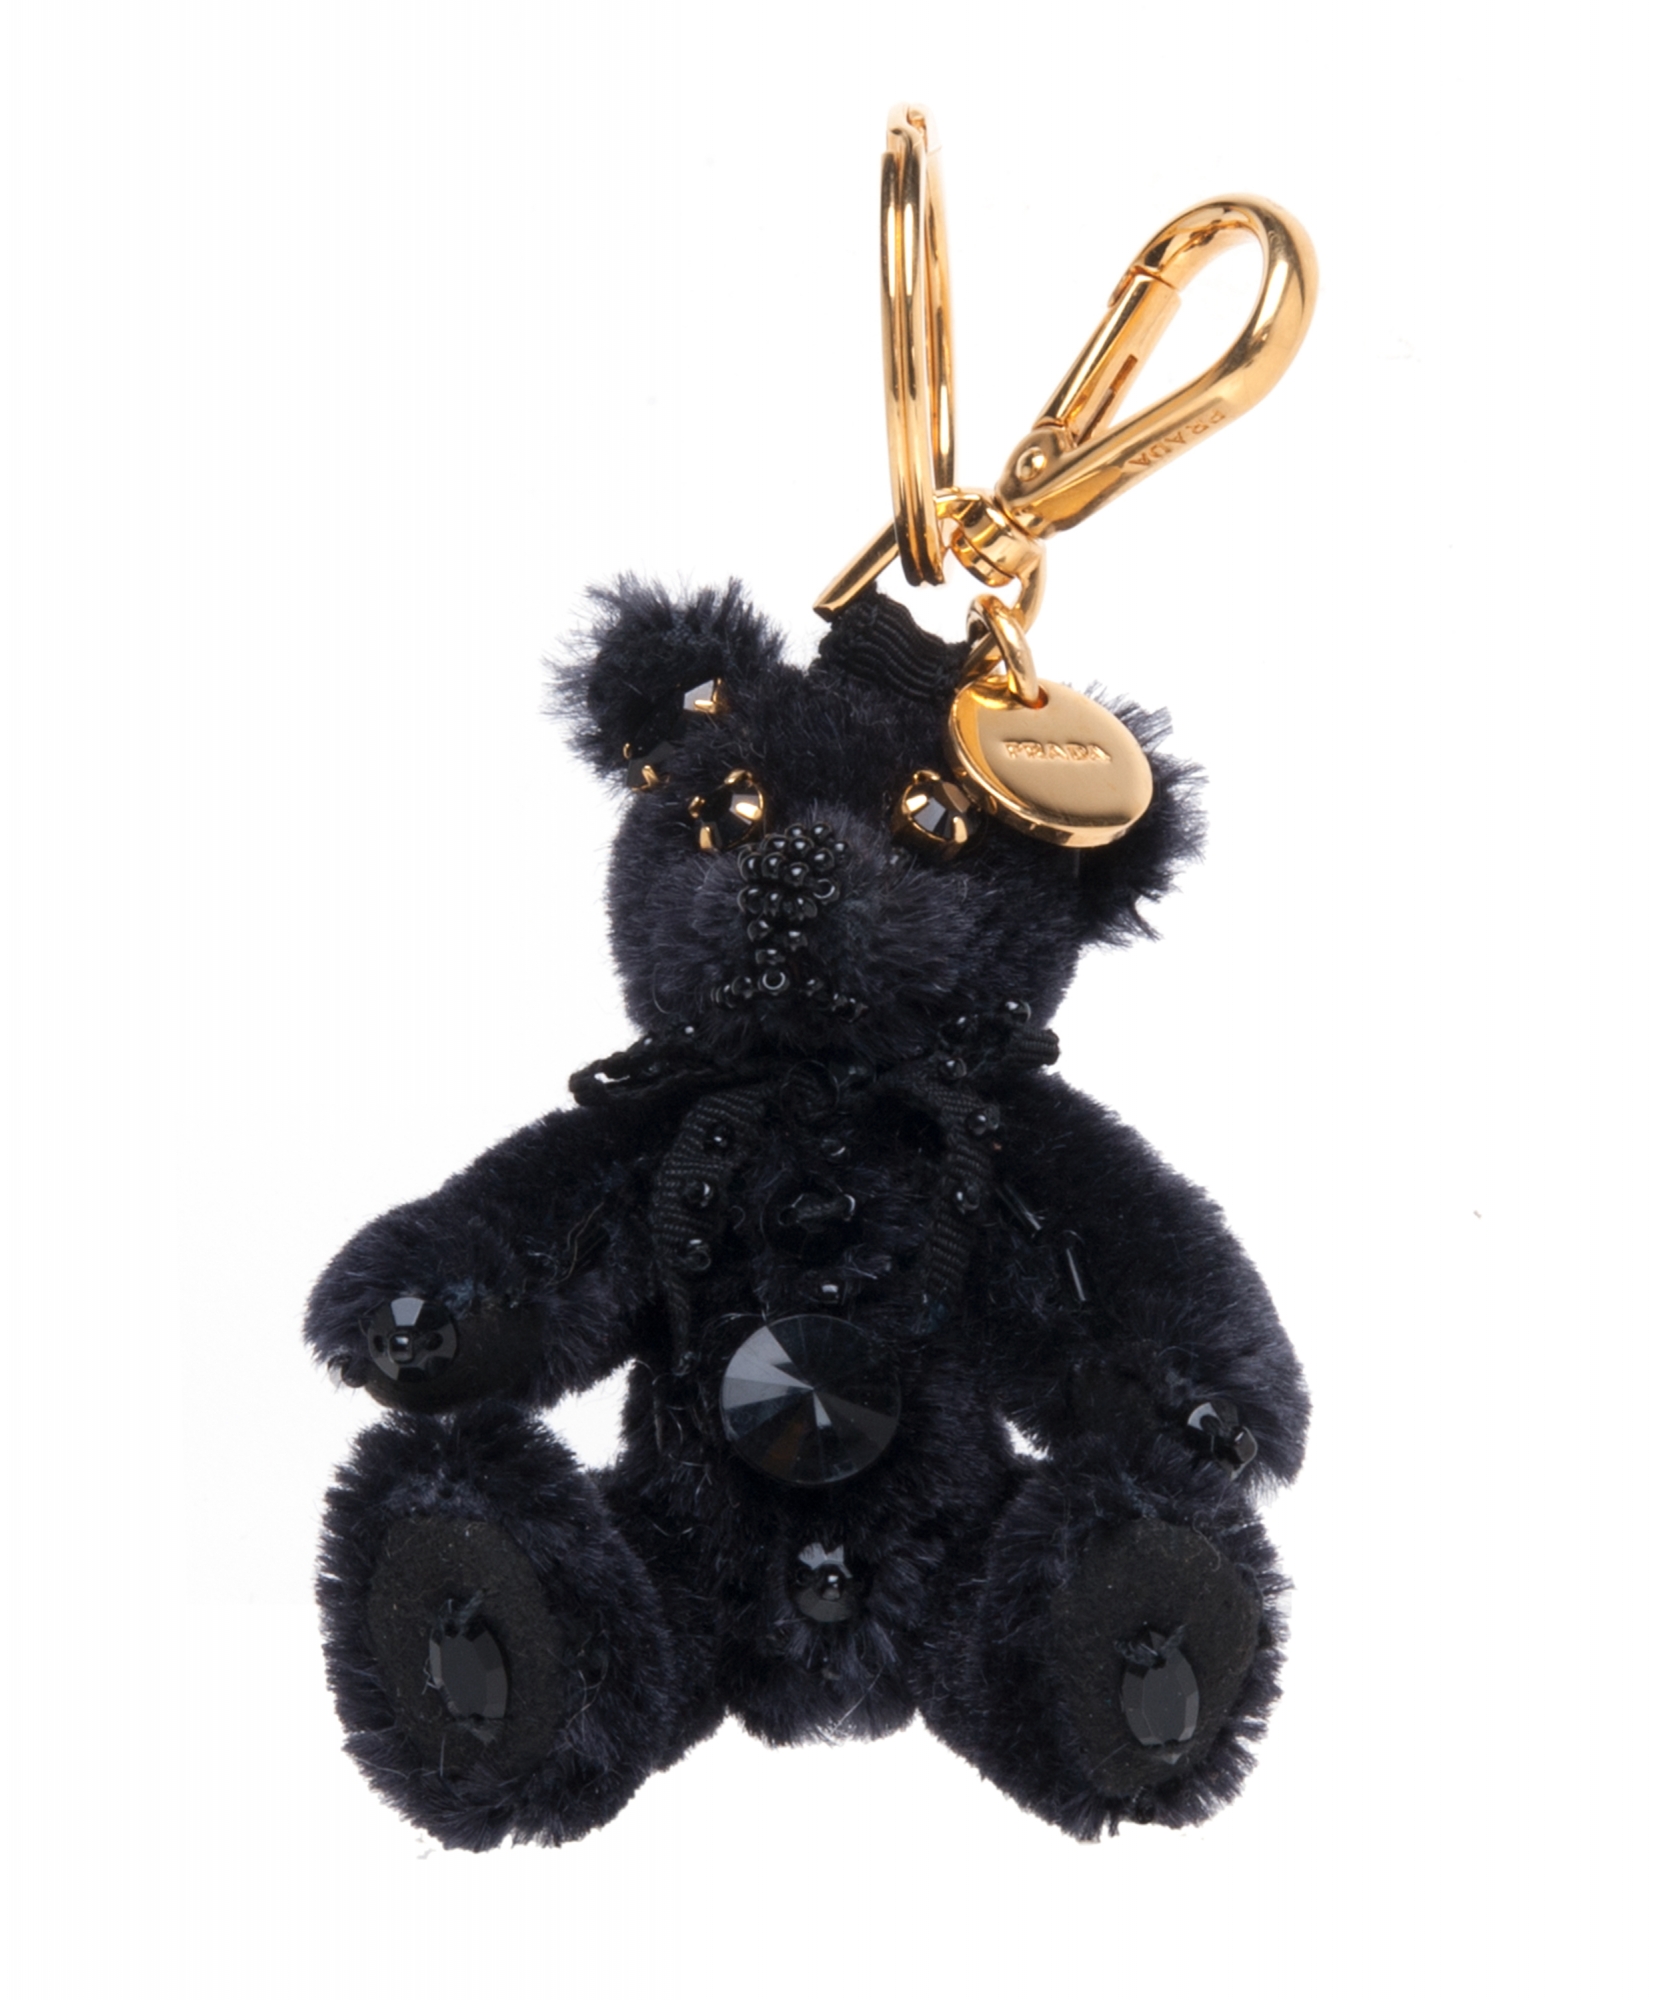 Prada Teddy Bear Charm/Key Chain 